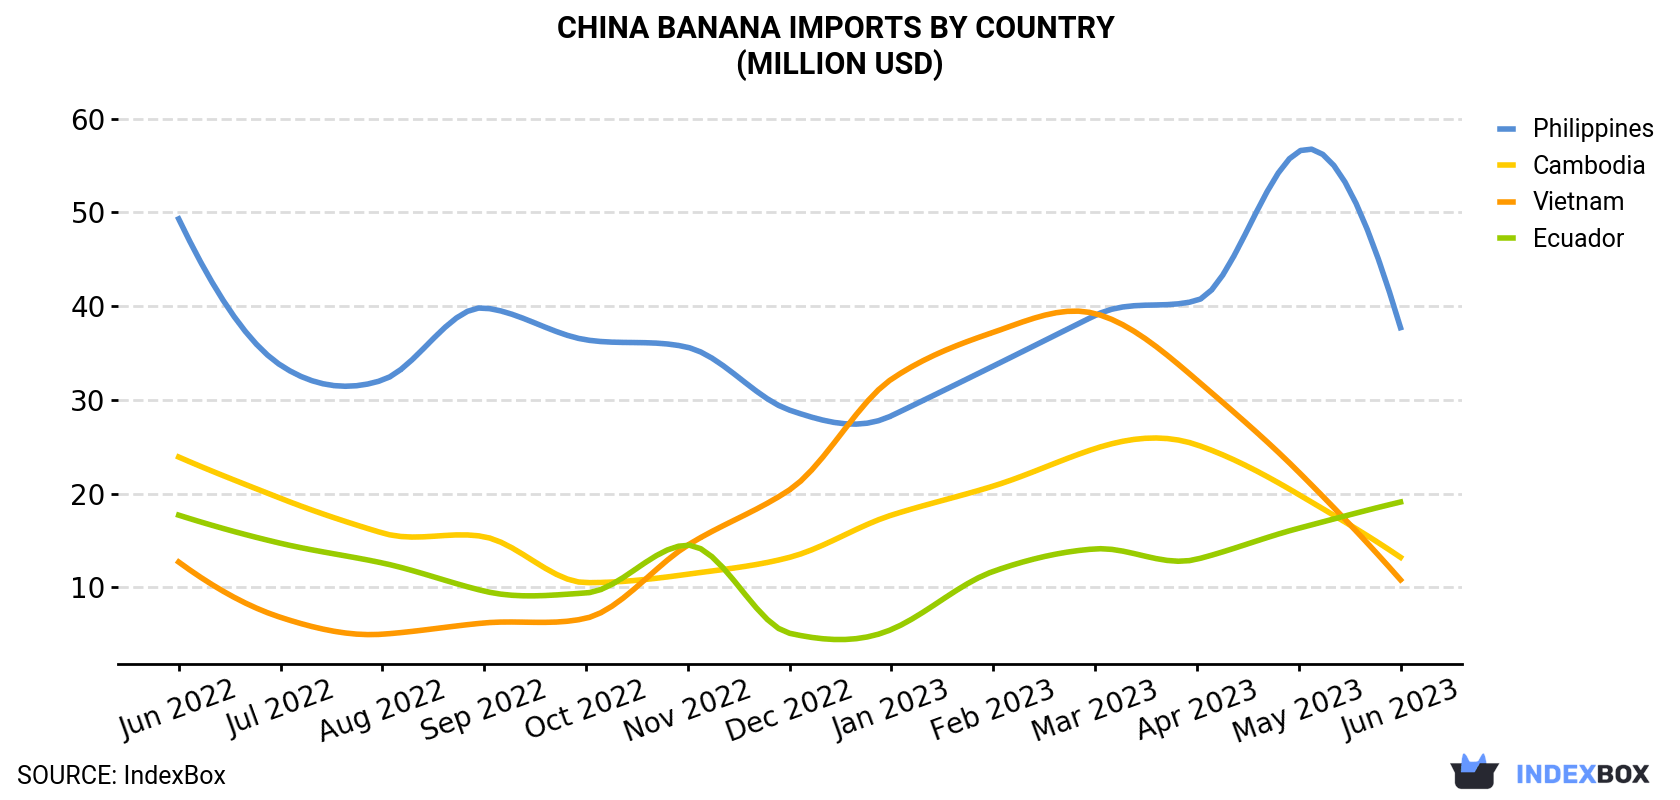 China Banana Imports By Country (Million USD)